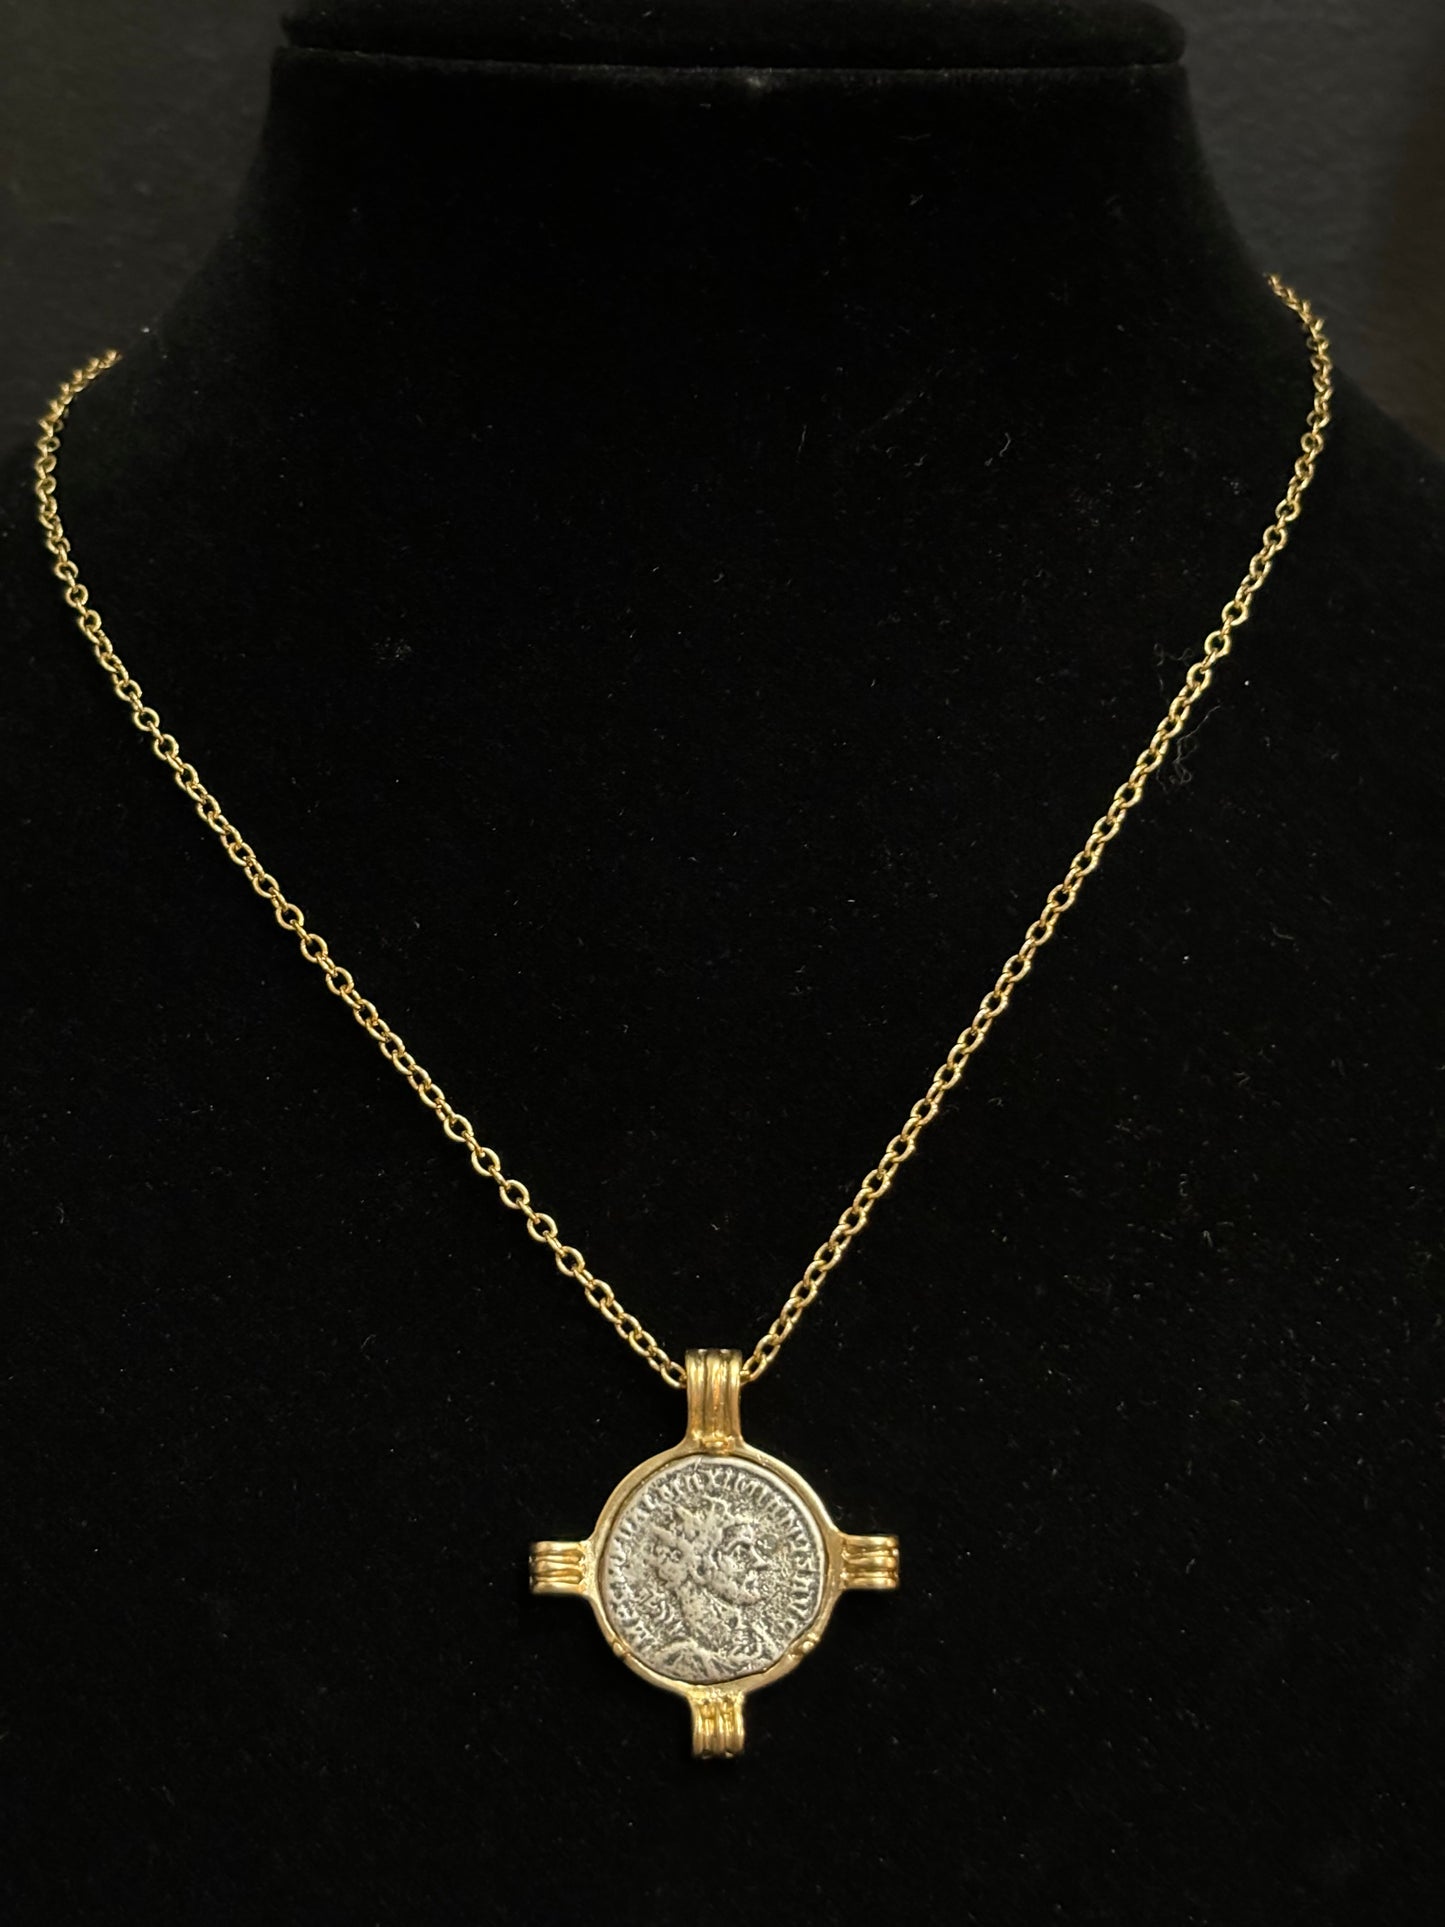 Unique Coin Necklace